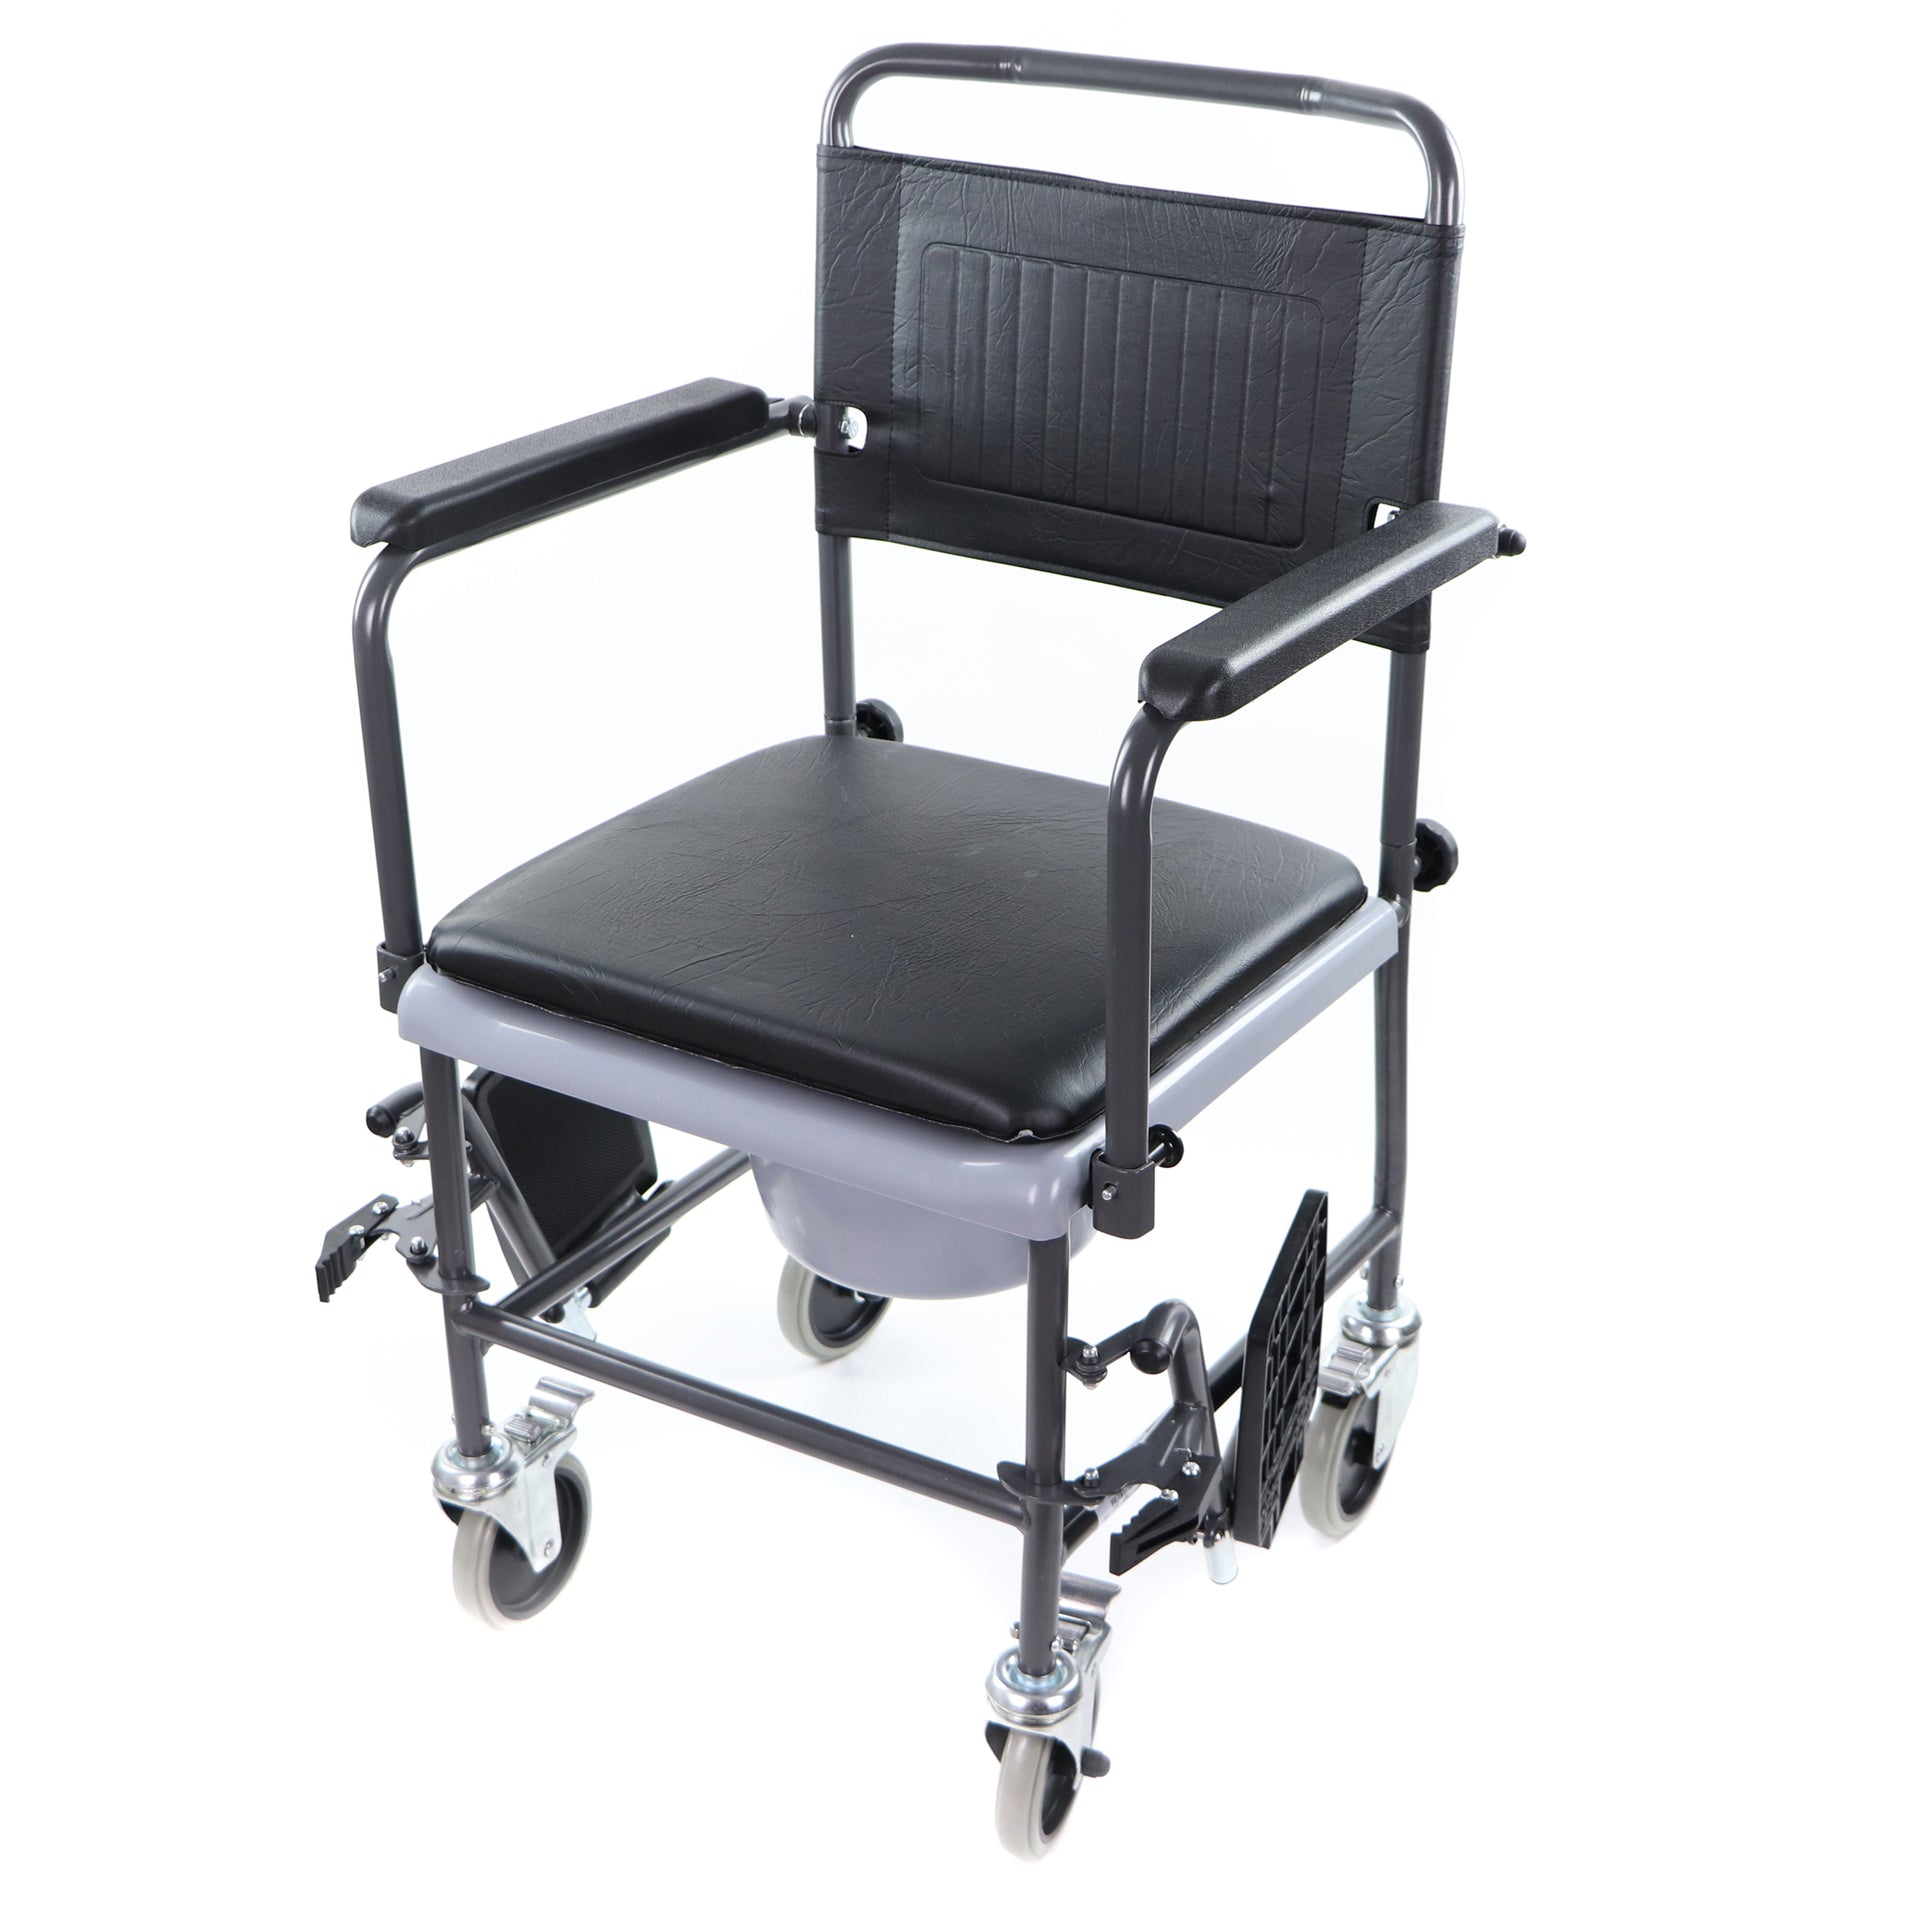 Chaise d'aisance sur roues avec appui-pieds